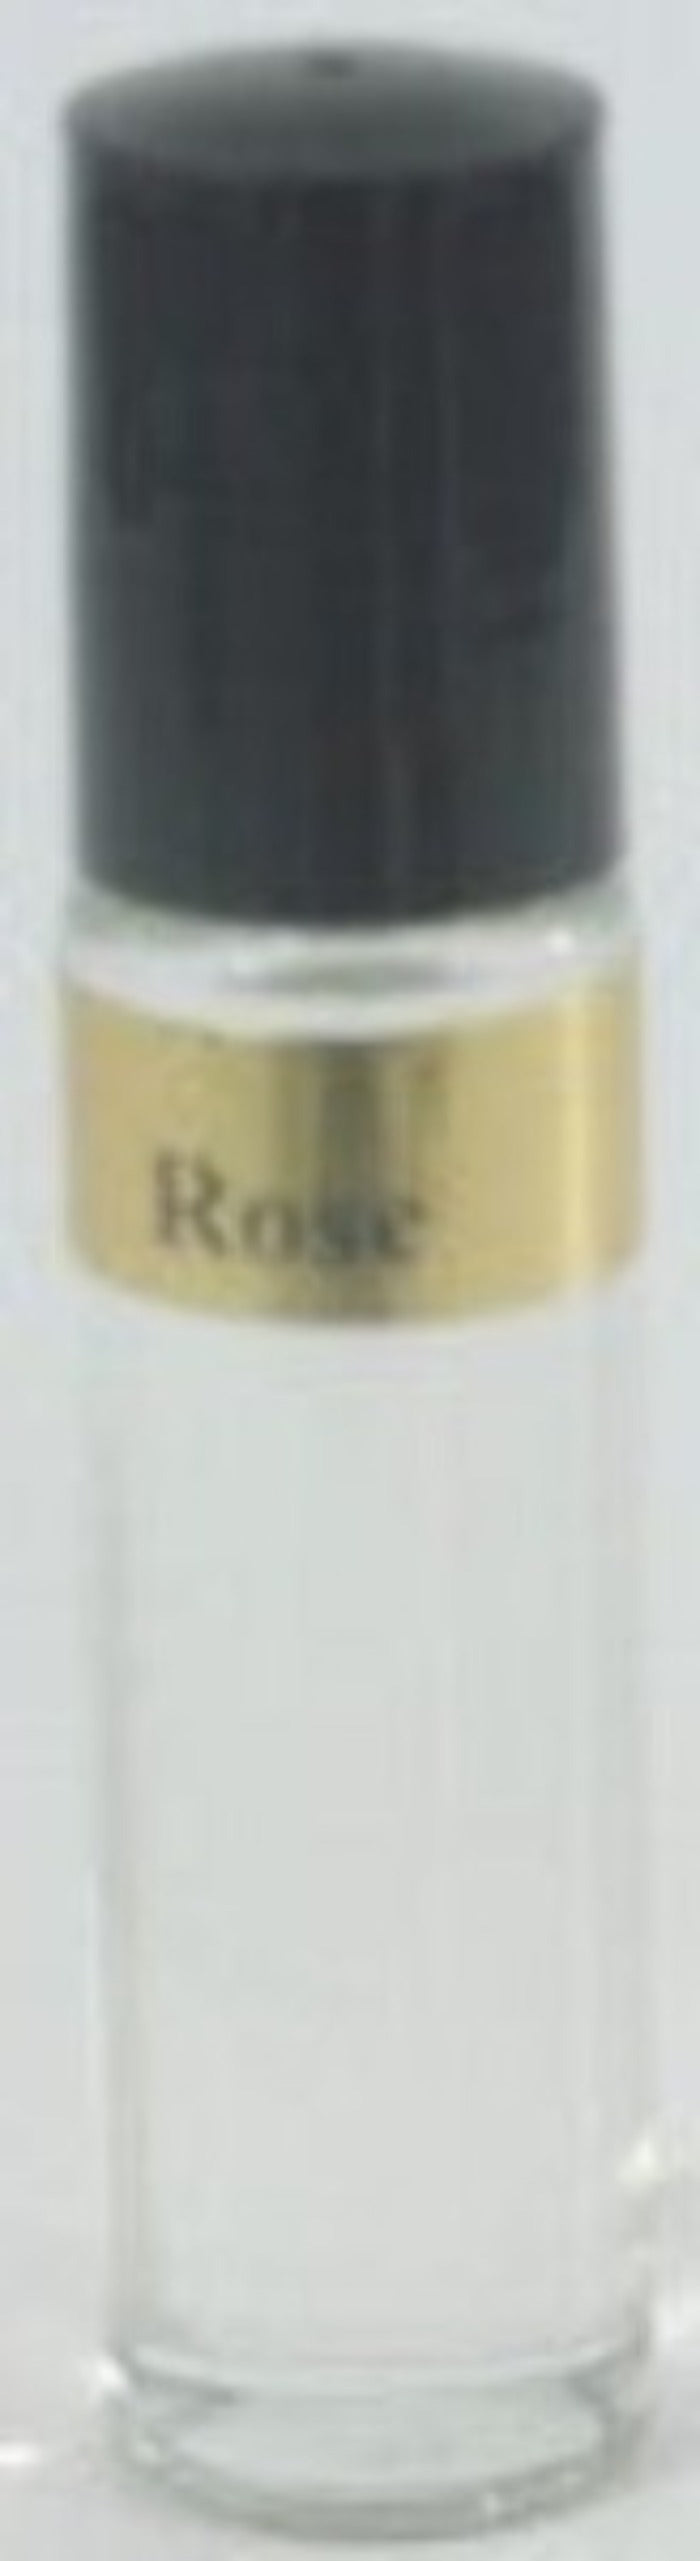 Rose Body Oil Unisex